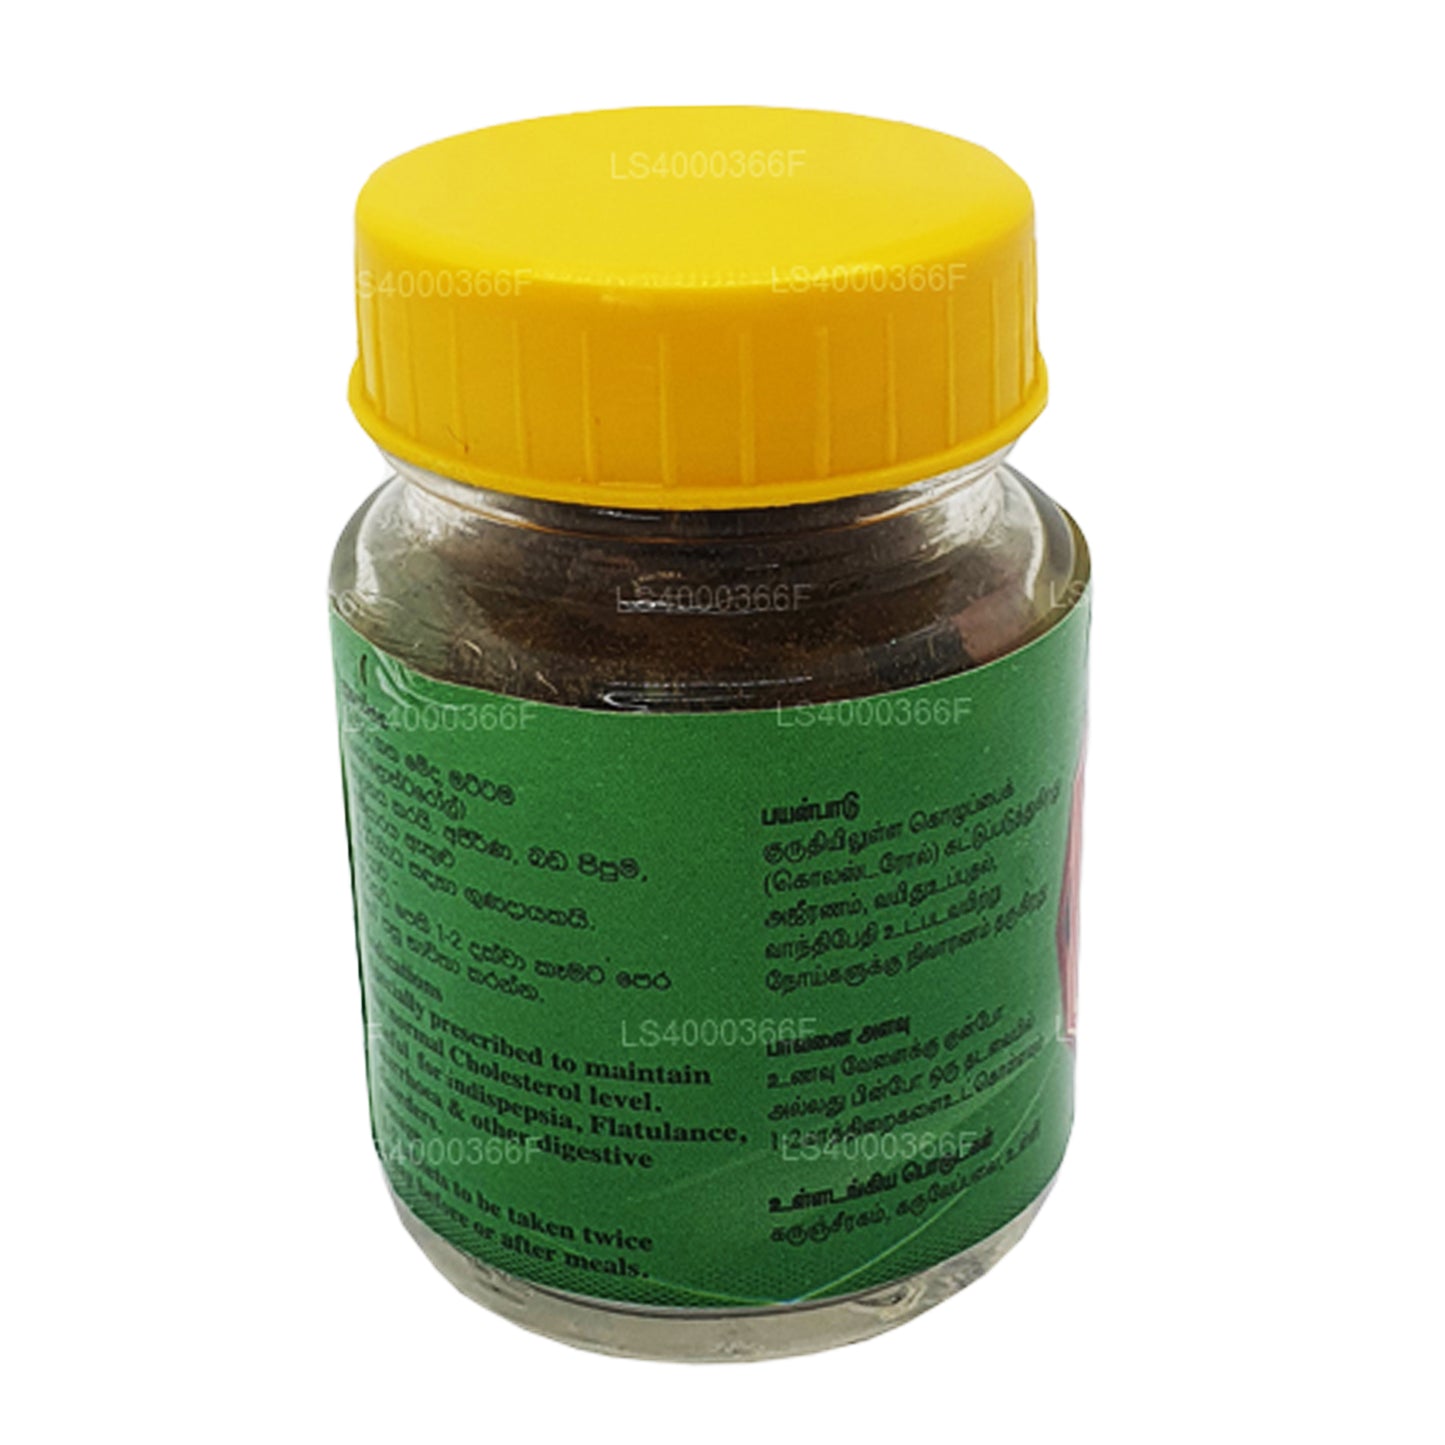 SLADC Meda Harani tabletid (30g)